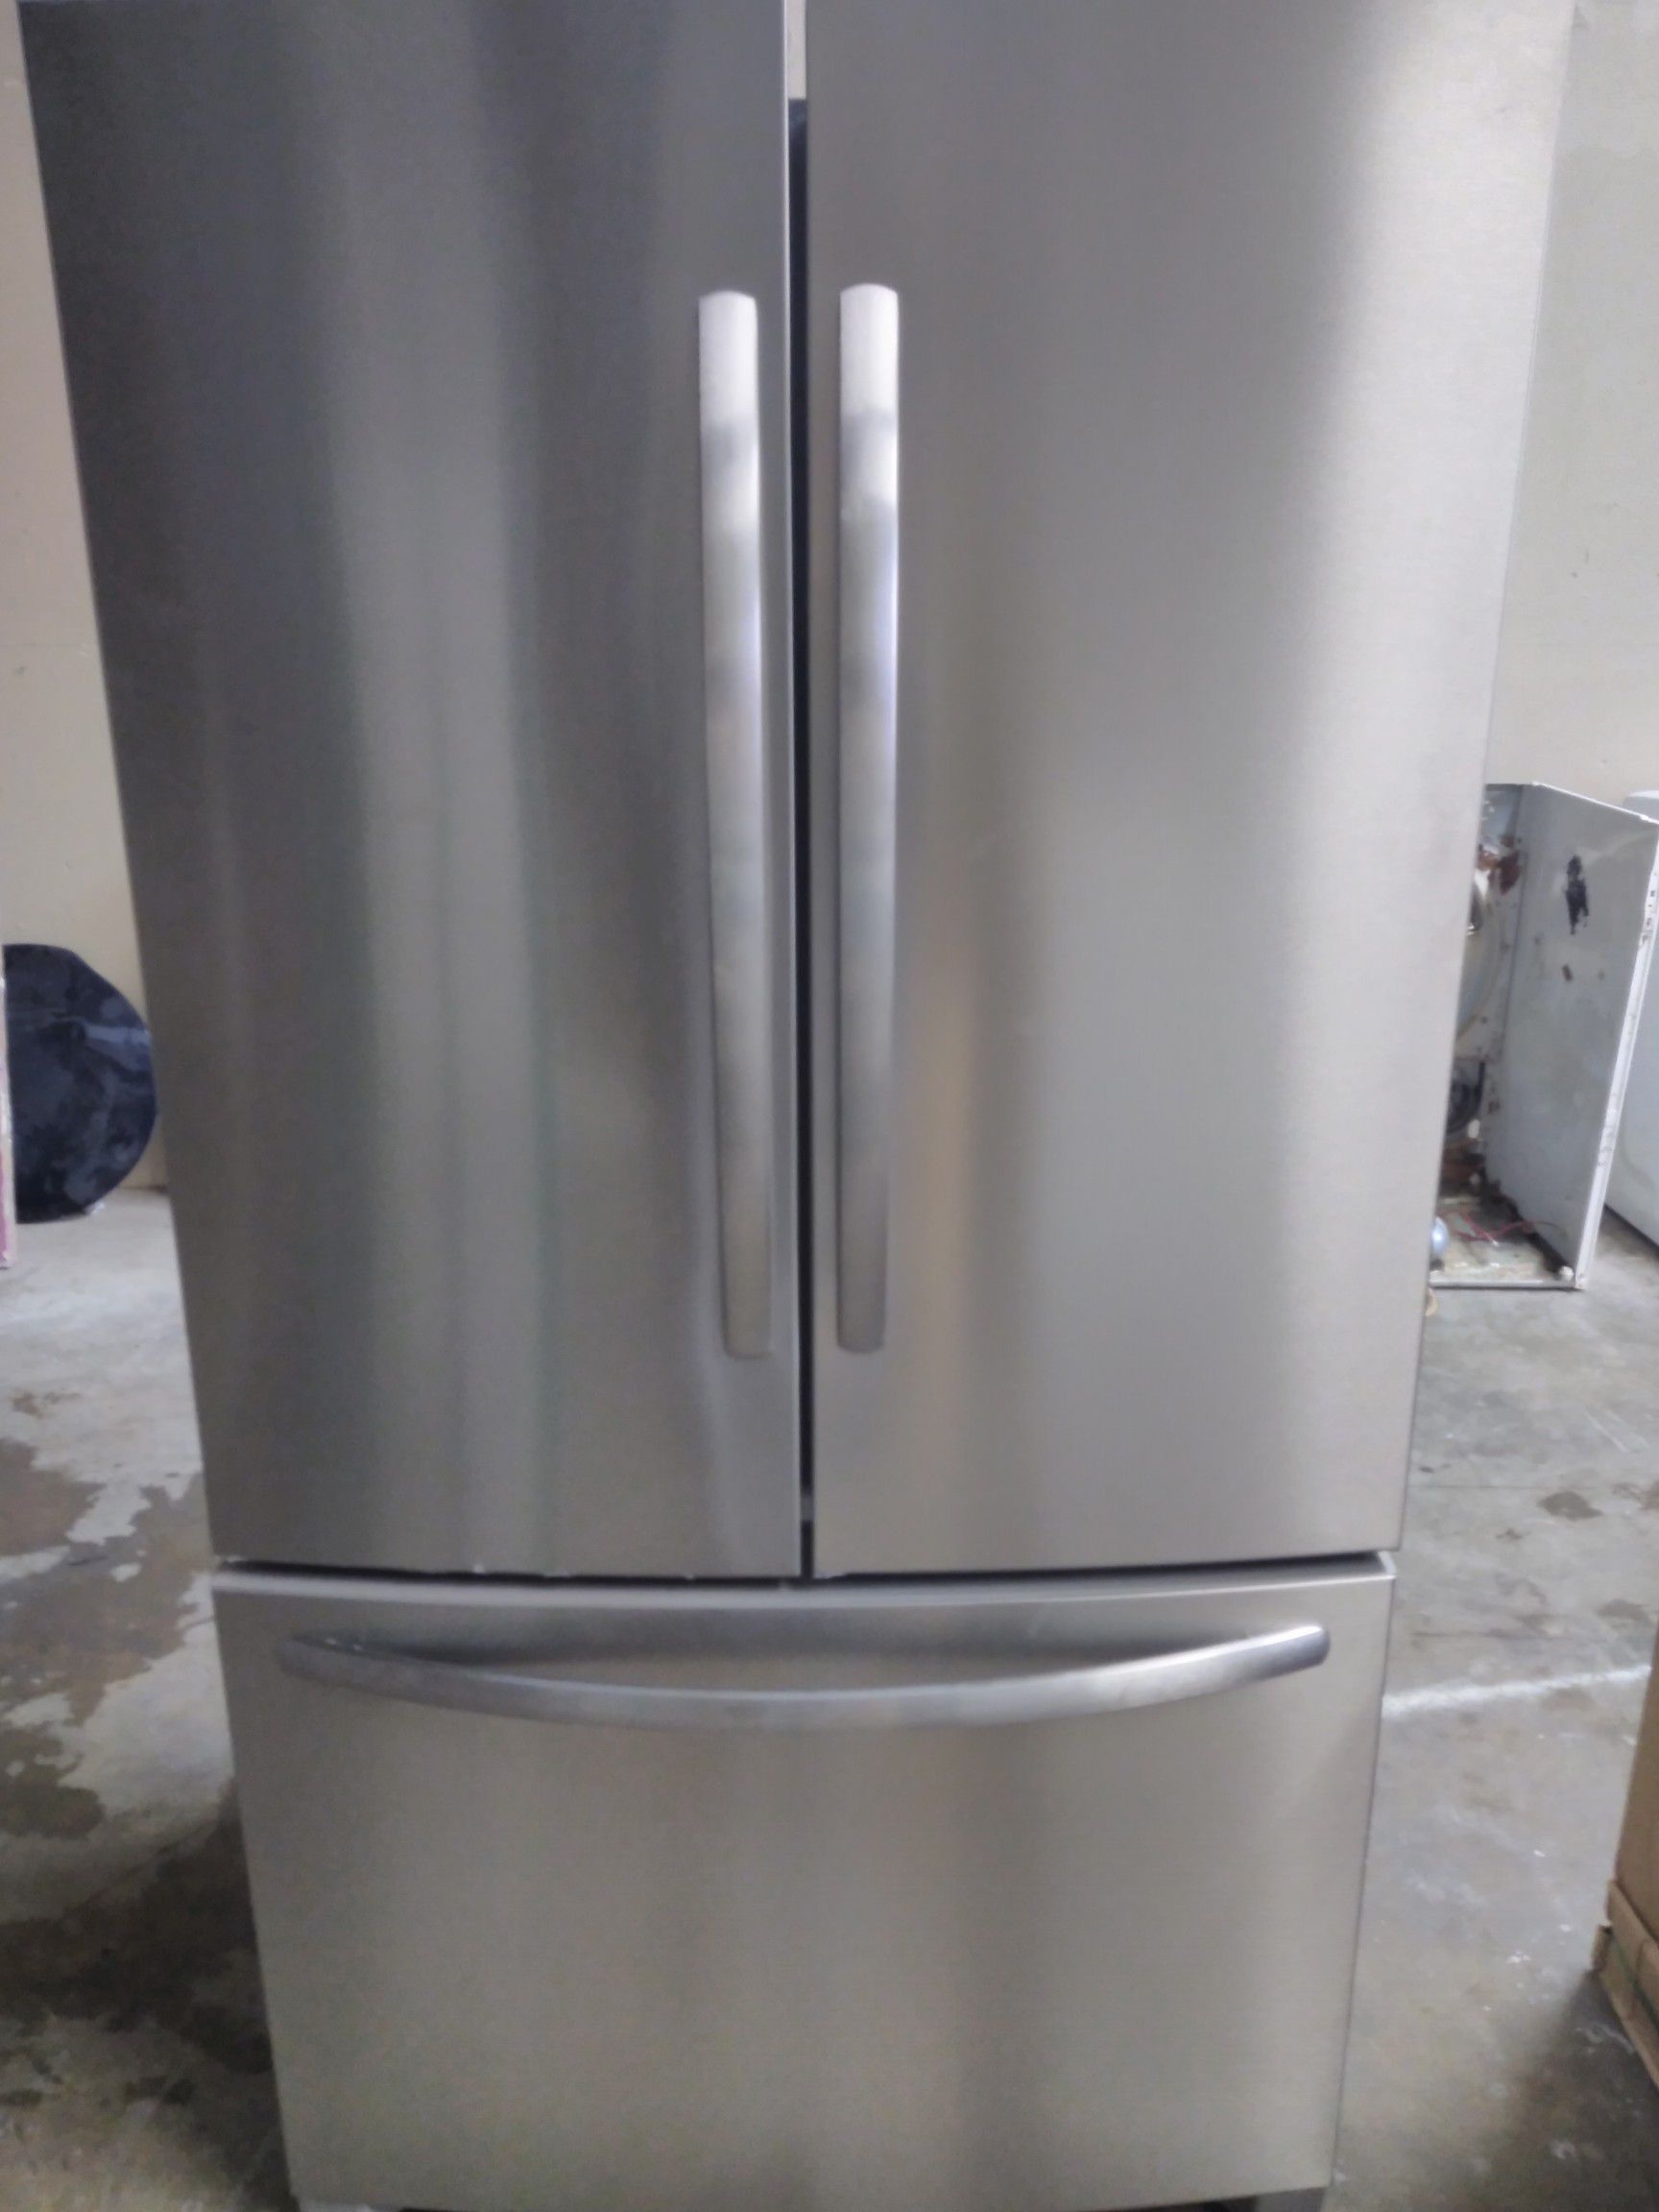 New Frigidaire Refrigerator $500 With Warranty